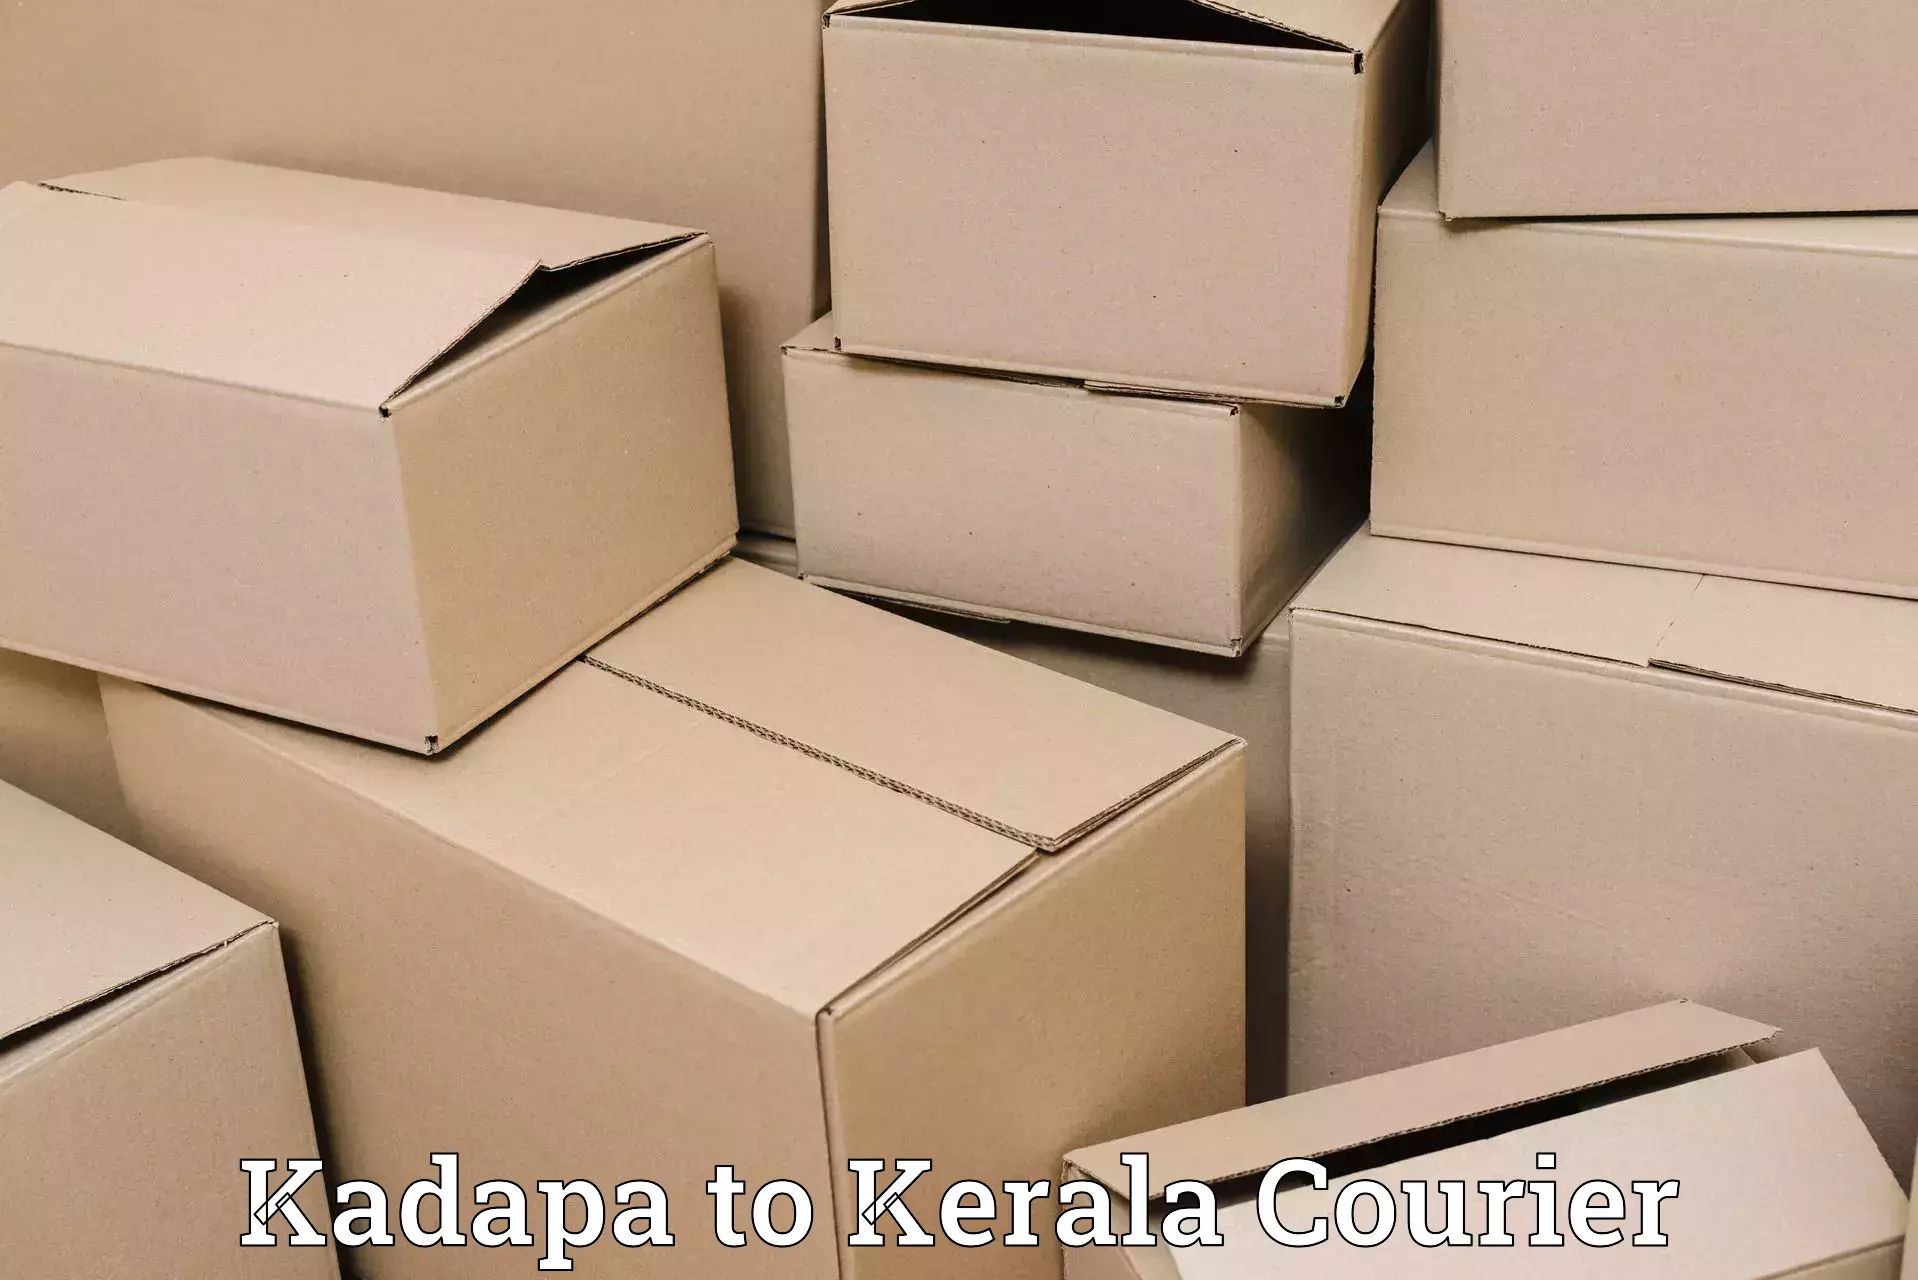 Ocean freight courier Kadapa to Kerala